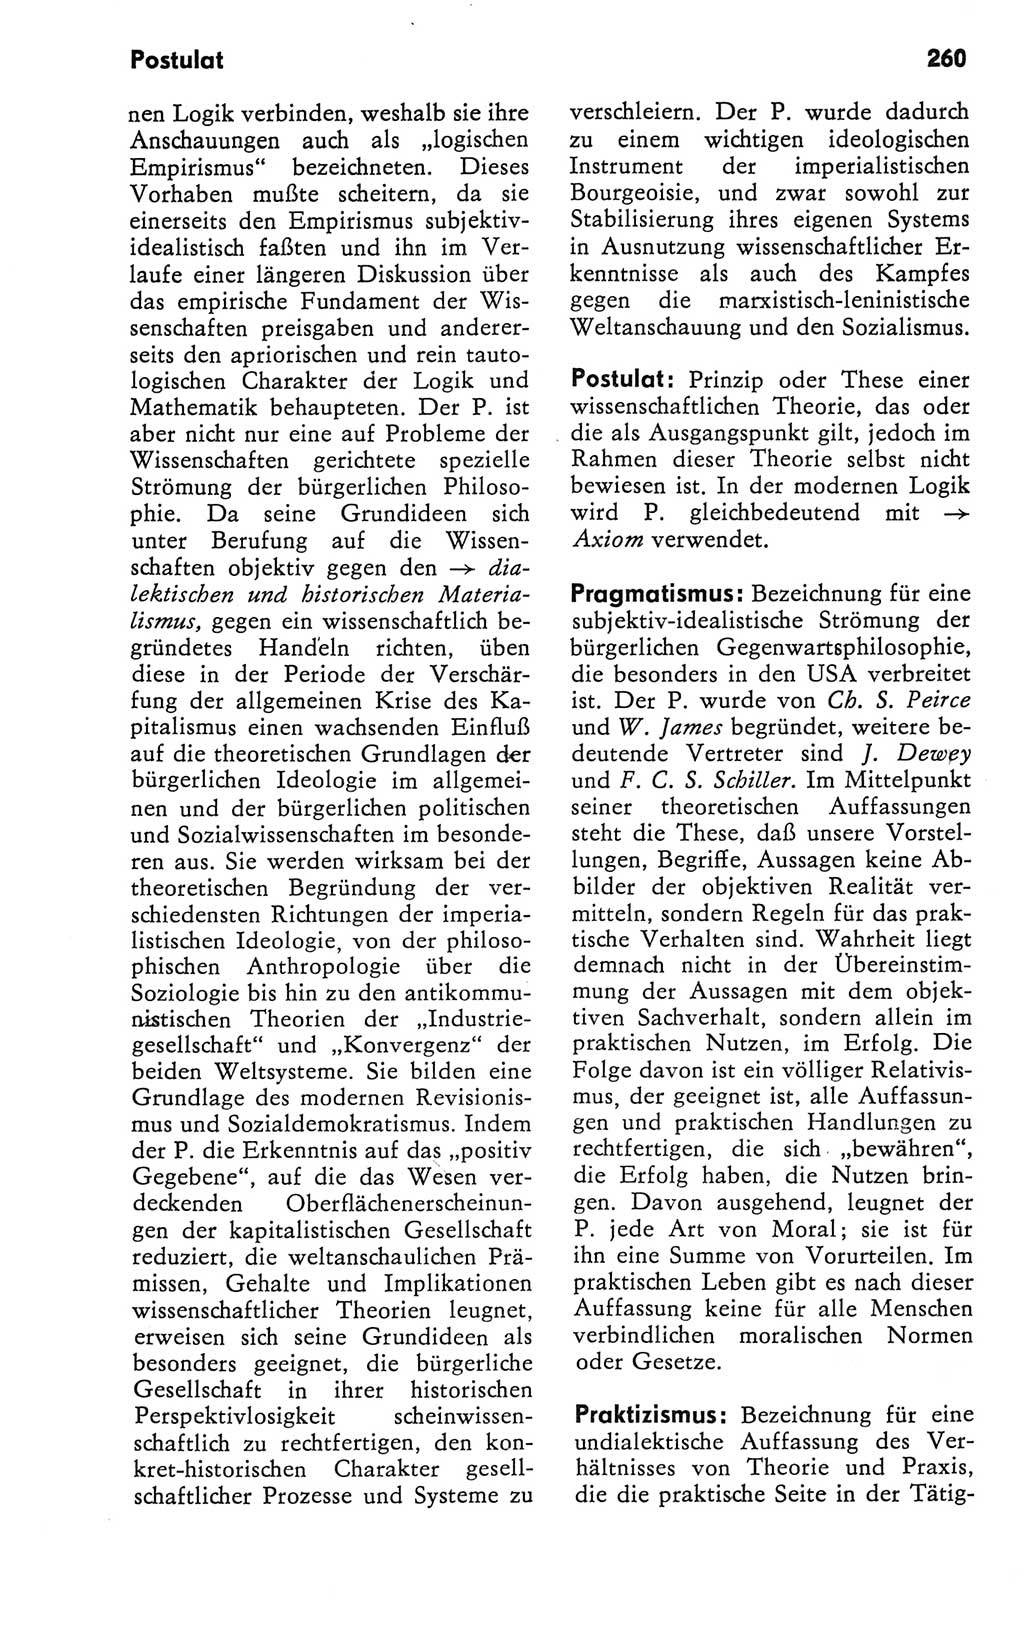 Kleines Wörterbuch der marxistisch-leninistischen Philosophie [Deutsche Demokratische Republik (DDR)] 1981, Seite 260 (Kl. Wb. ML Phil. DDR 1981, S. 260)